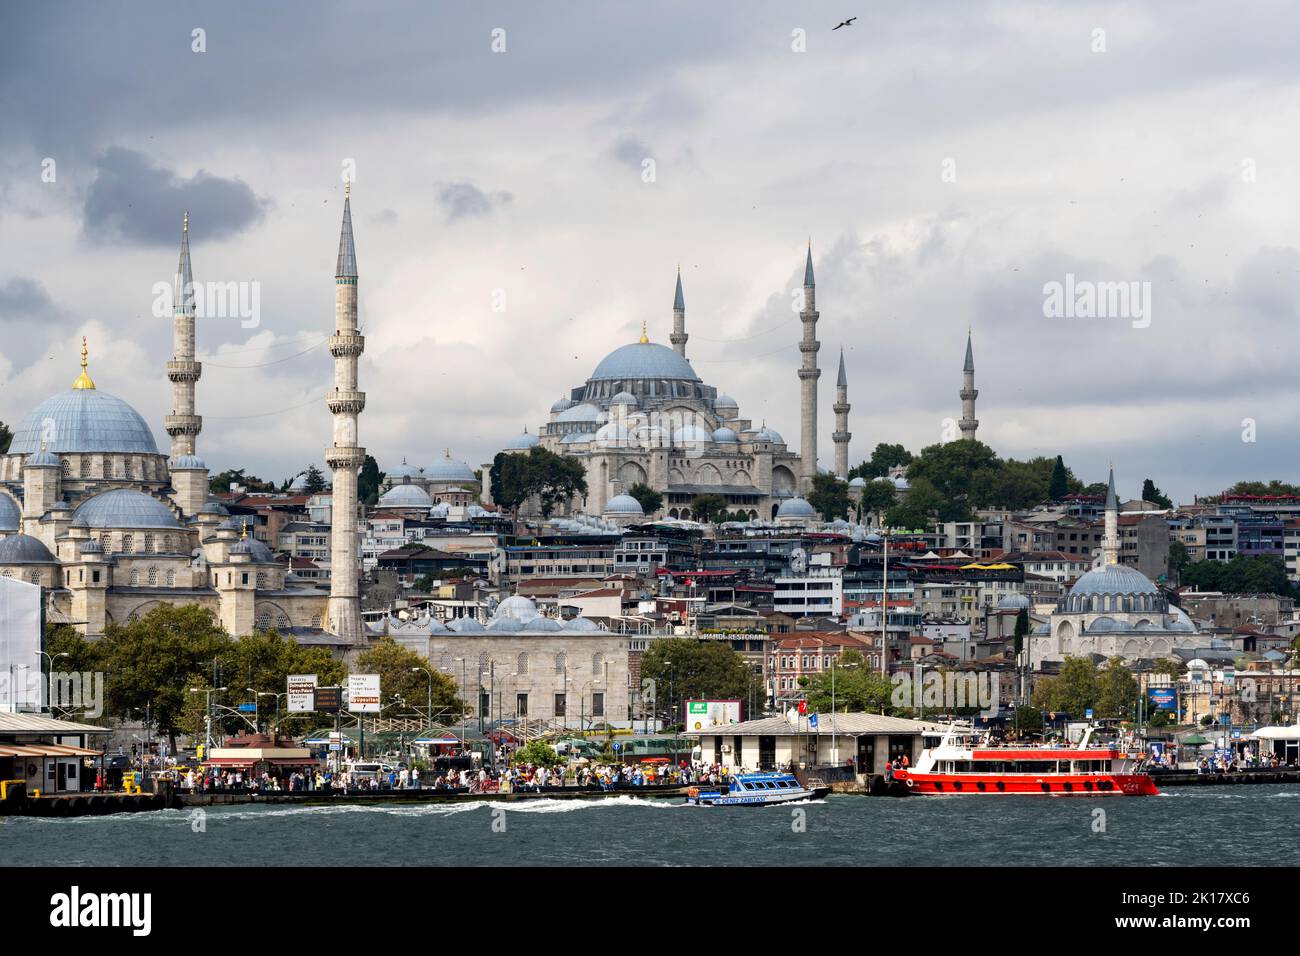 Türkei, Istanbul, Eminönü, Pier der Fährschiffe, links die Minarette der Yeni Cami, am Hügel die Süleymaniye-Camii und rechts unten die Rüstem-Pasa-Ca Stock Photo